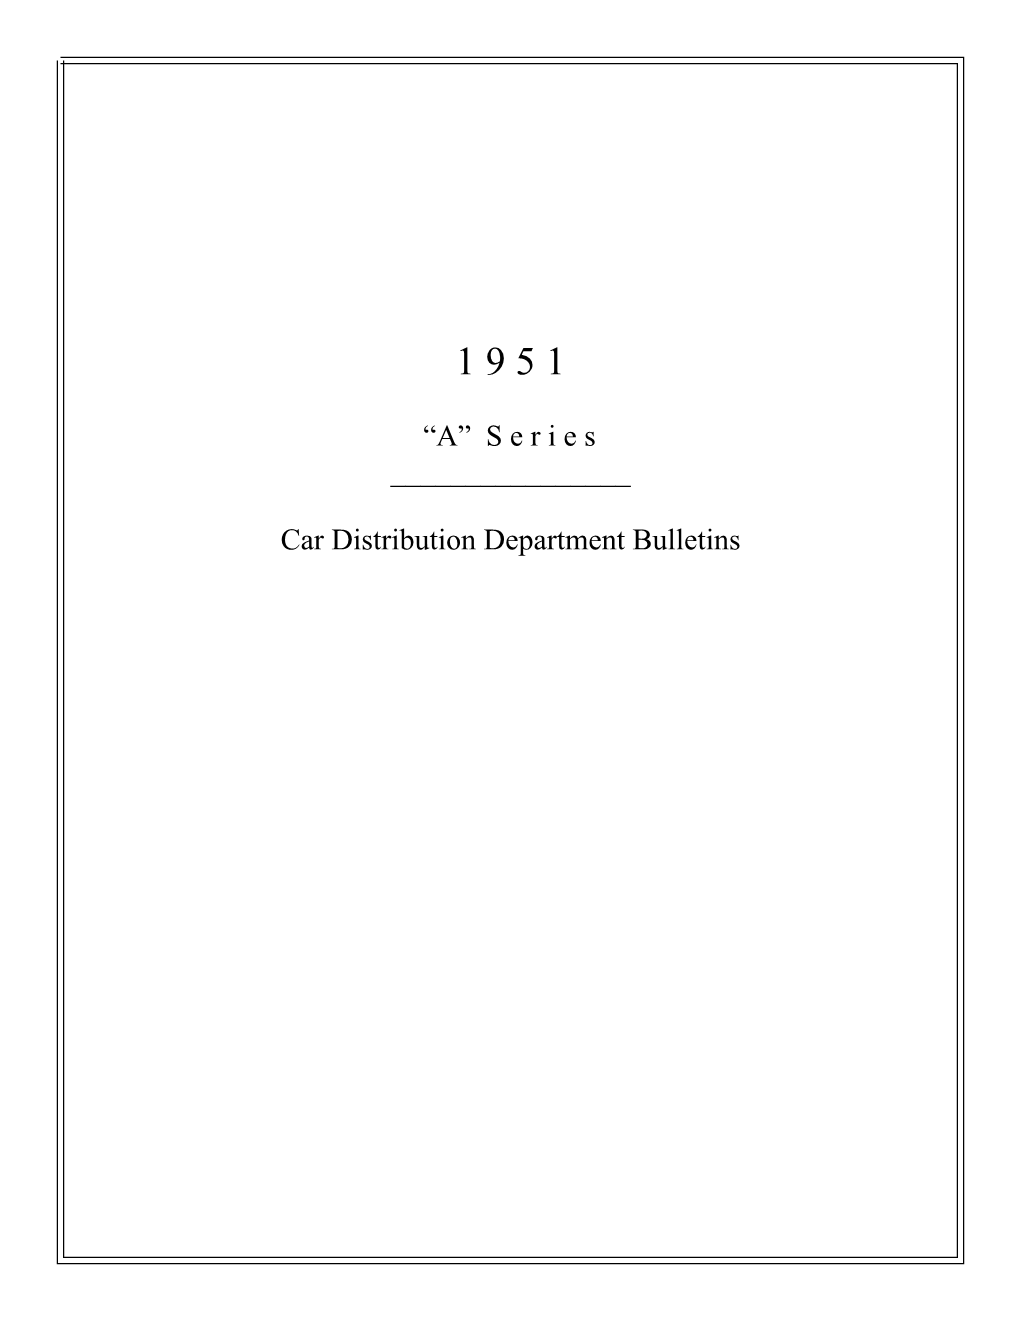 1951 Hudson a Series Car Distribution Dept Bulletins